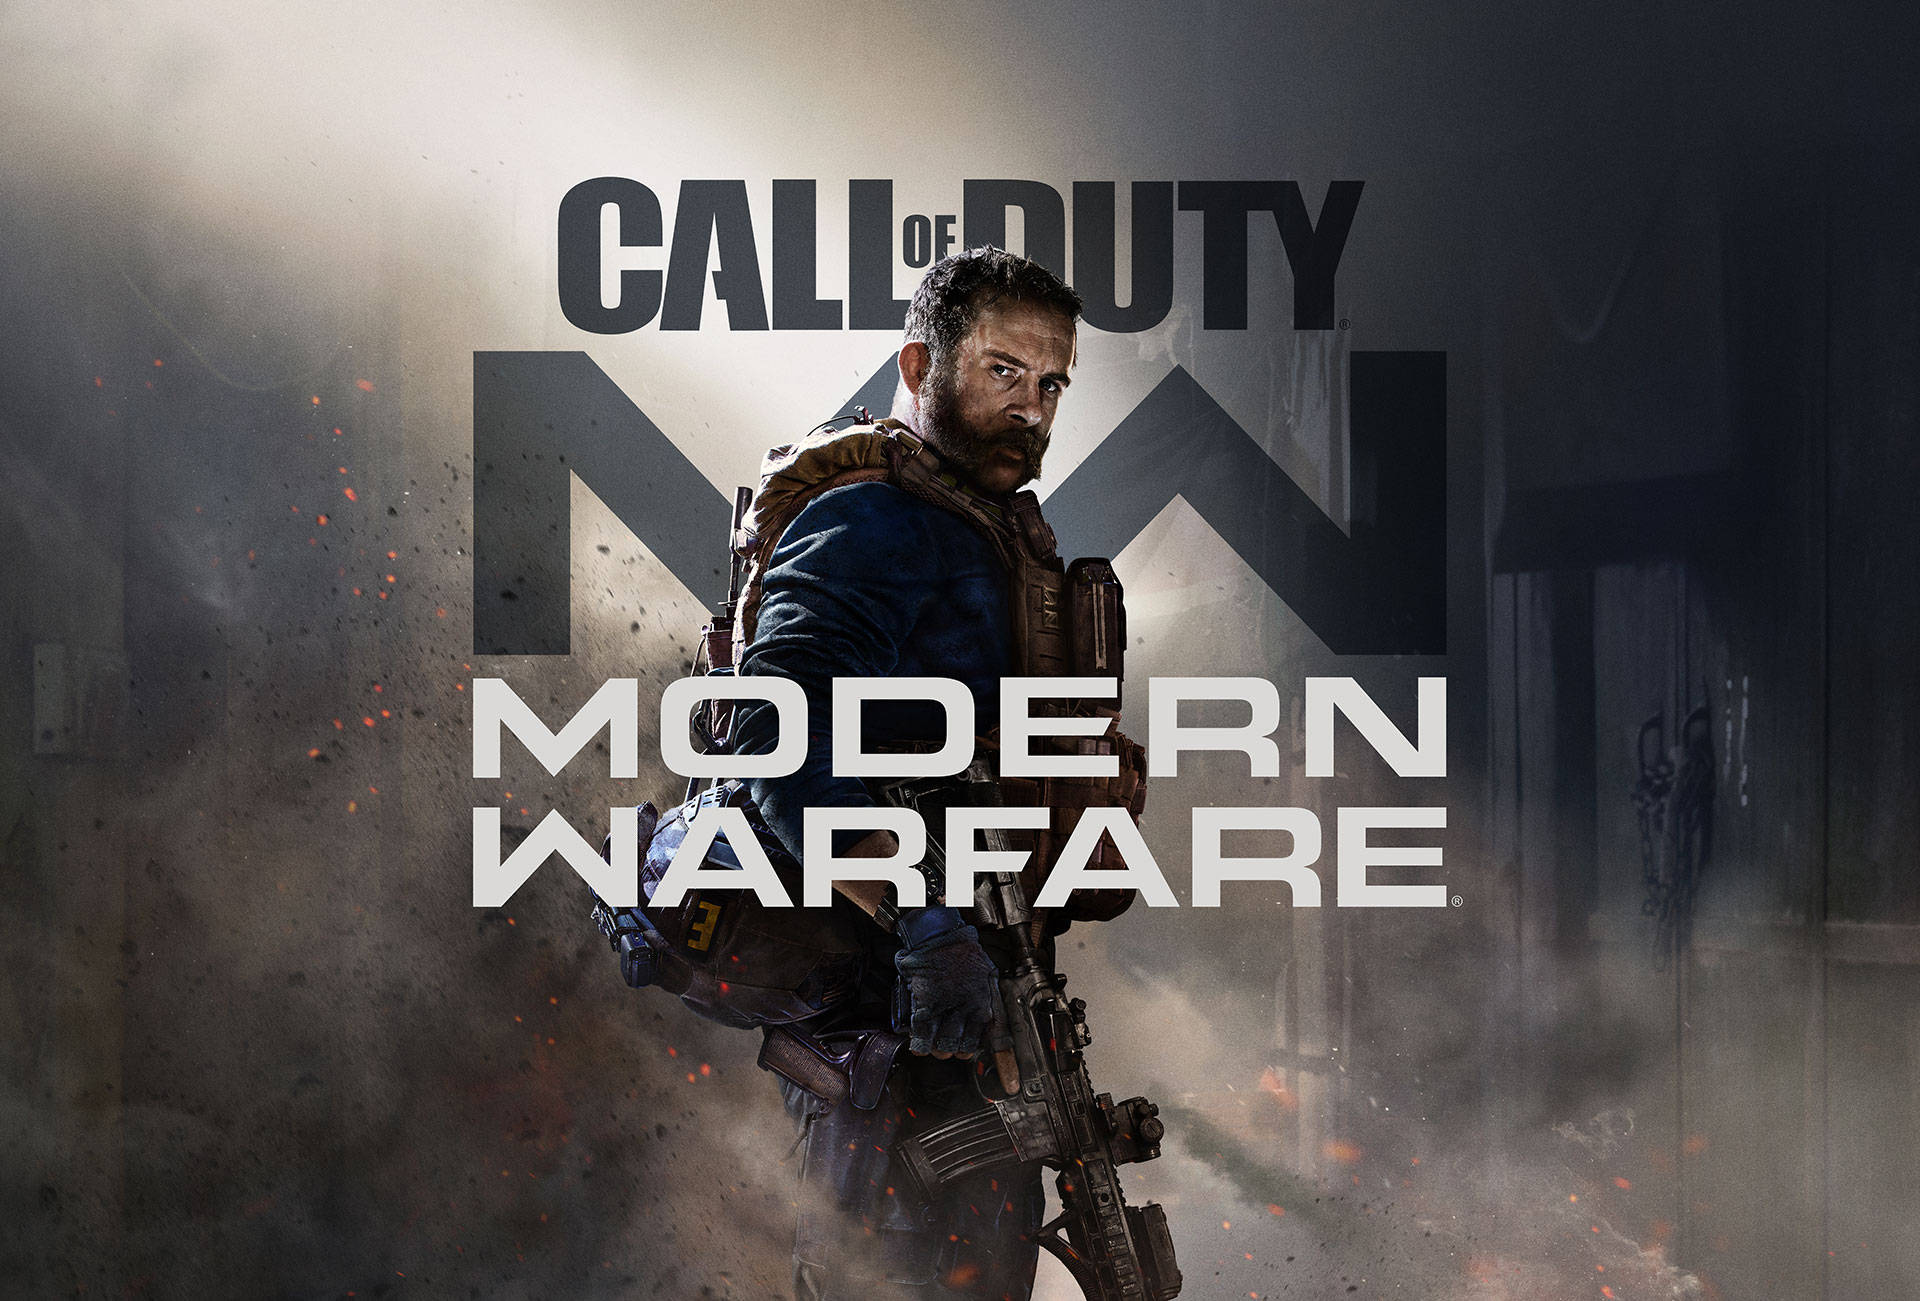 Spelacall Of Duty Modern Warfare Och Upplev Spännande Action I Första Person Skyttarspel. Wallpaper